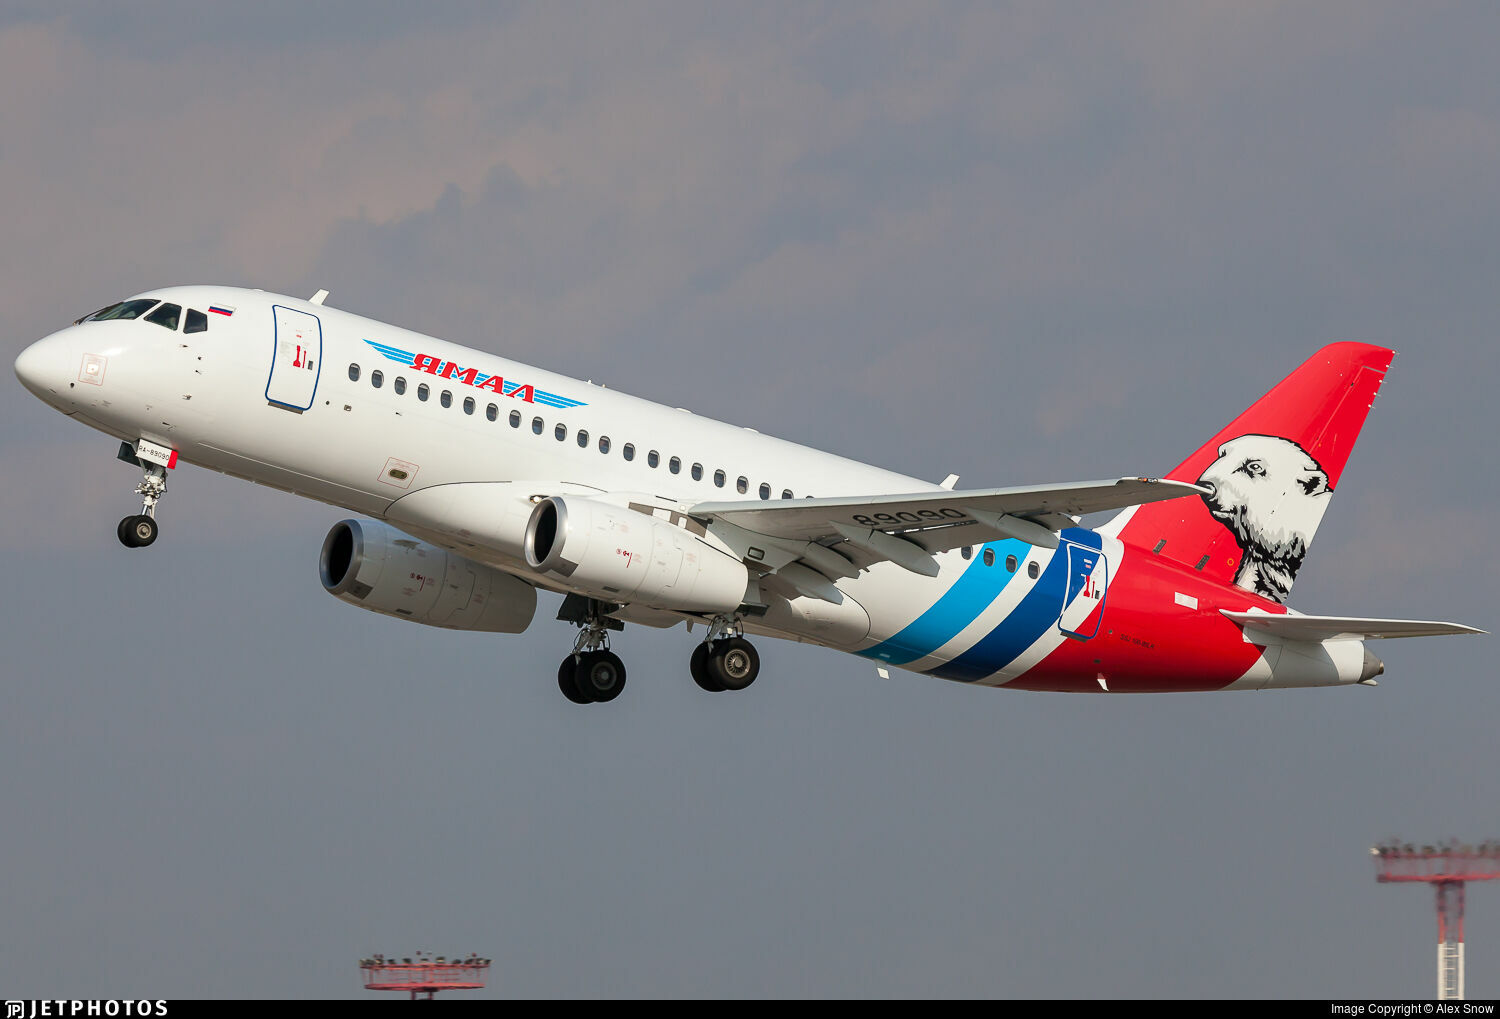 Superjet совершил аварийную посадку в Тюмени из-за попадания птицы в двигатель